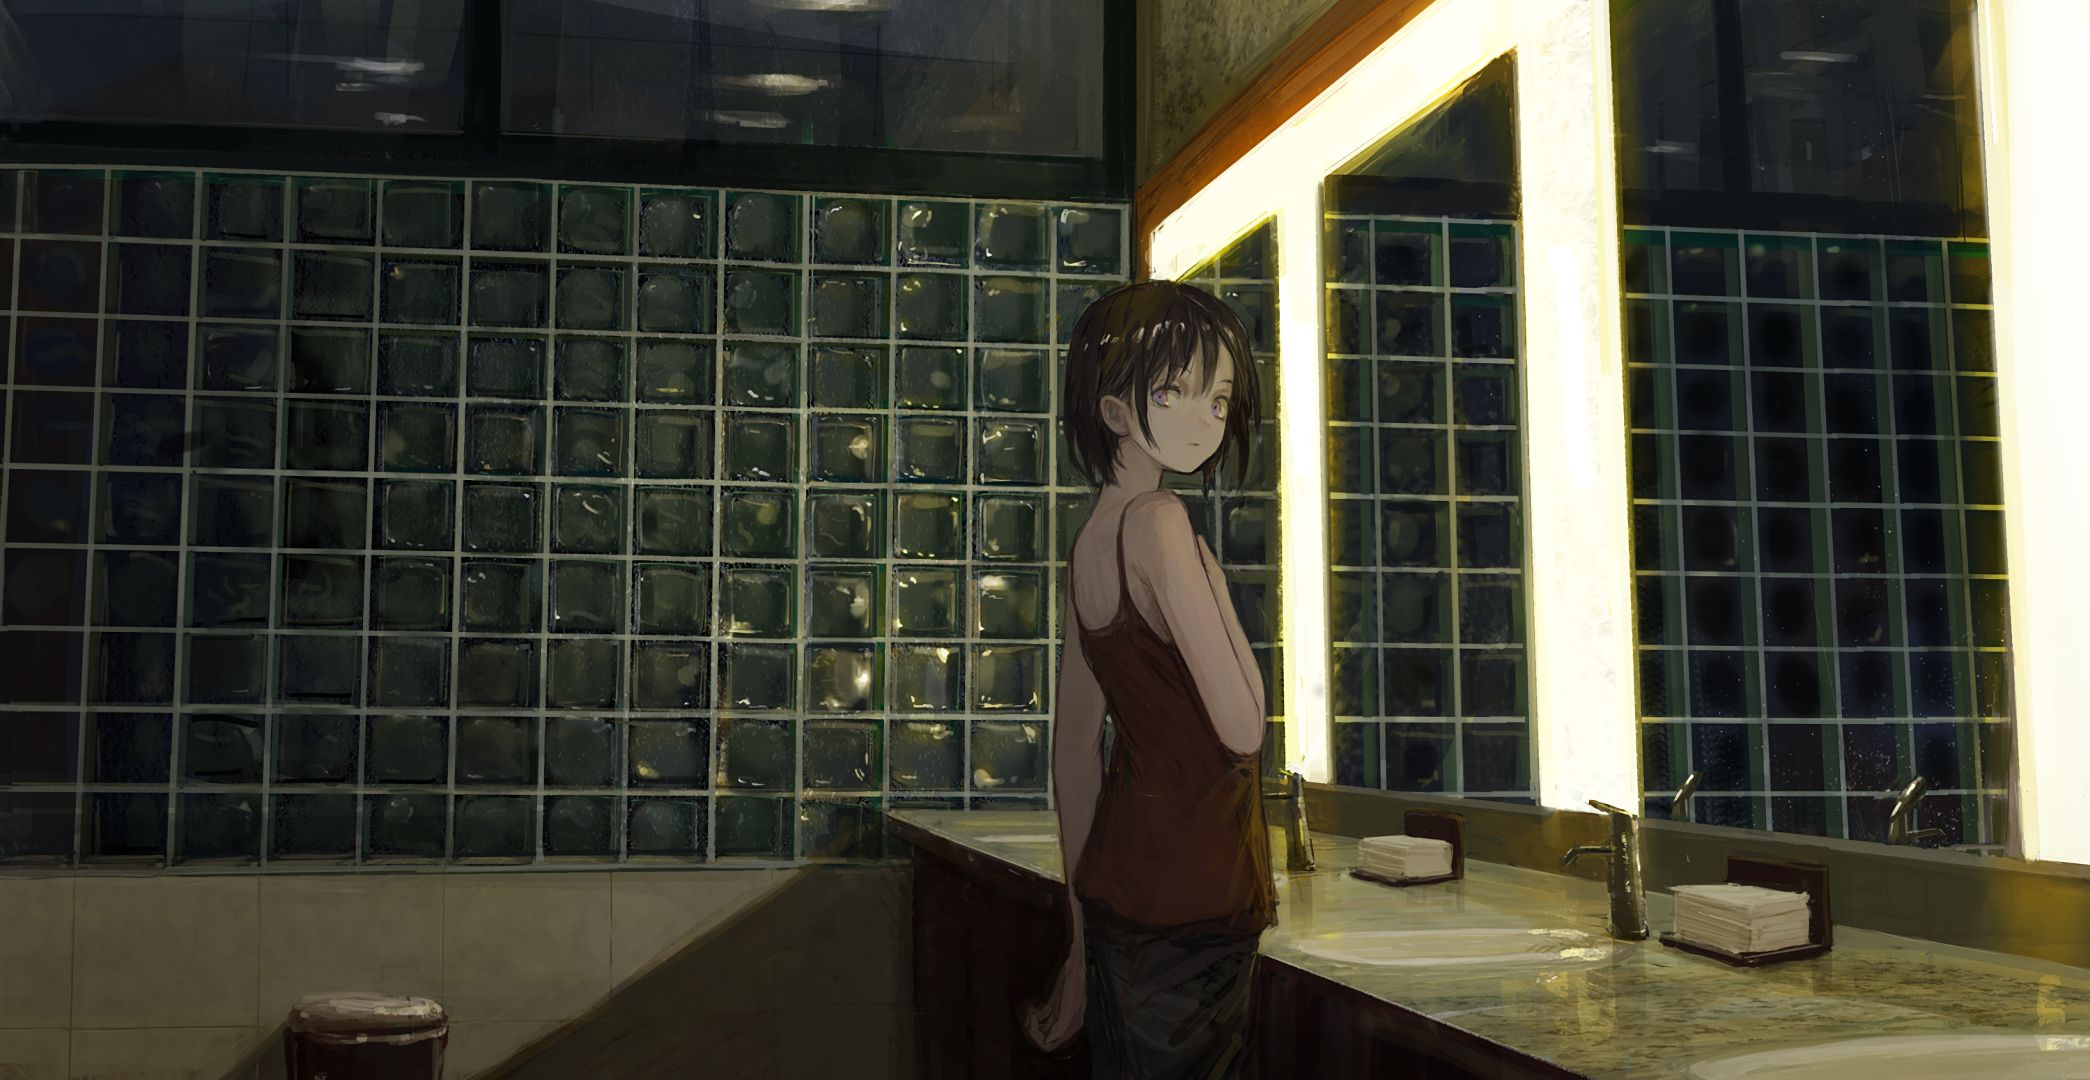 Anime Time] Japan Sinks, japan sinks 2020 HD wallpaper | Pxfuel